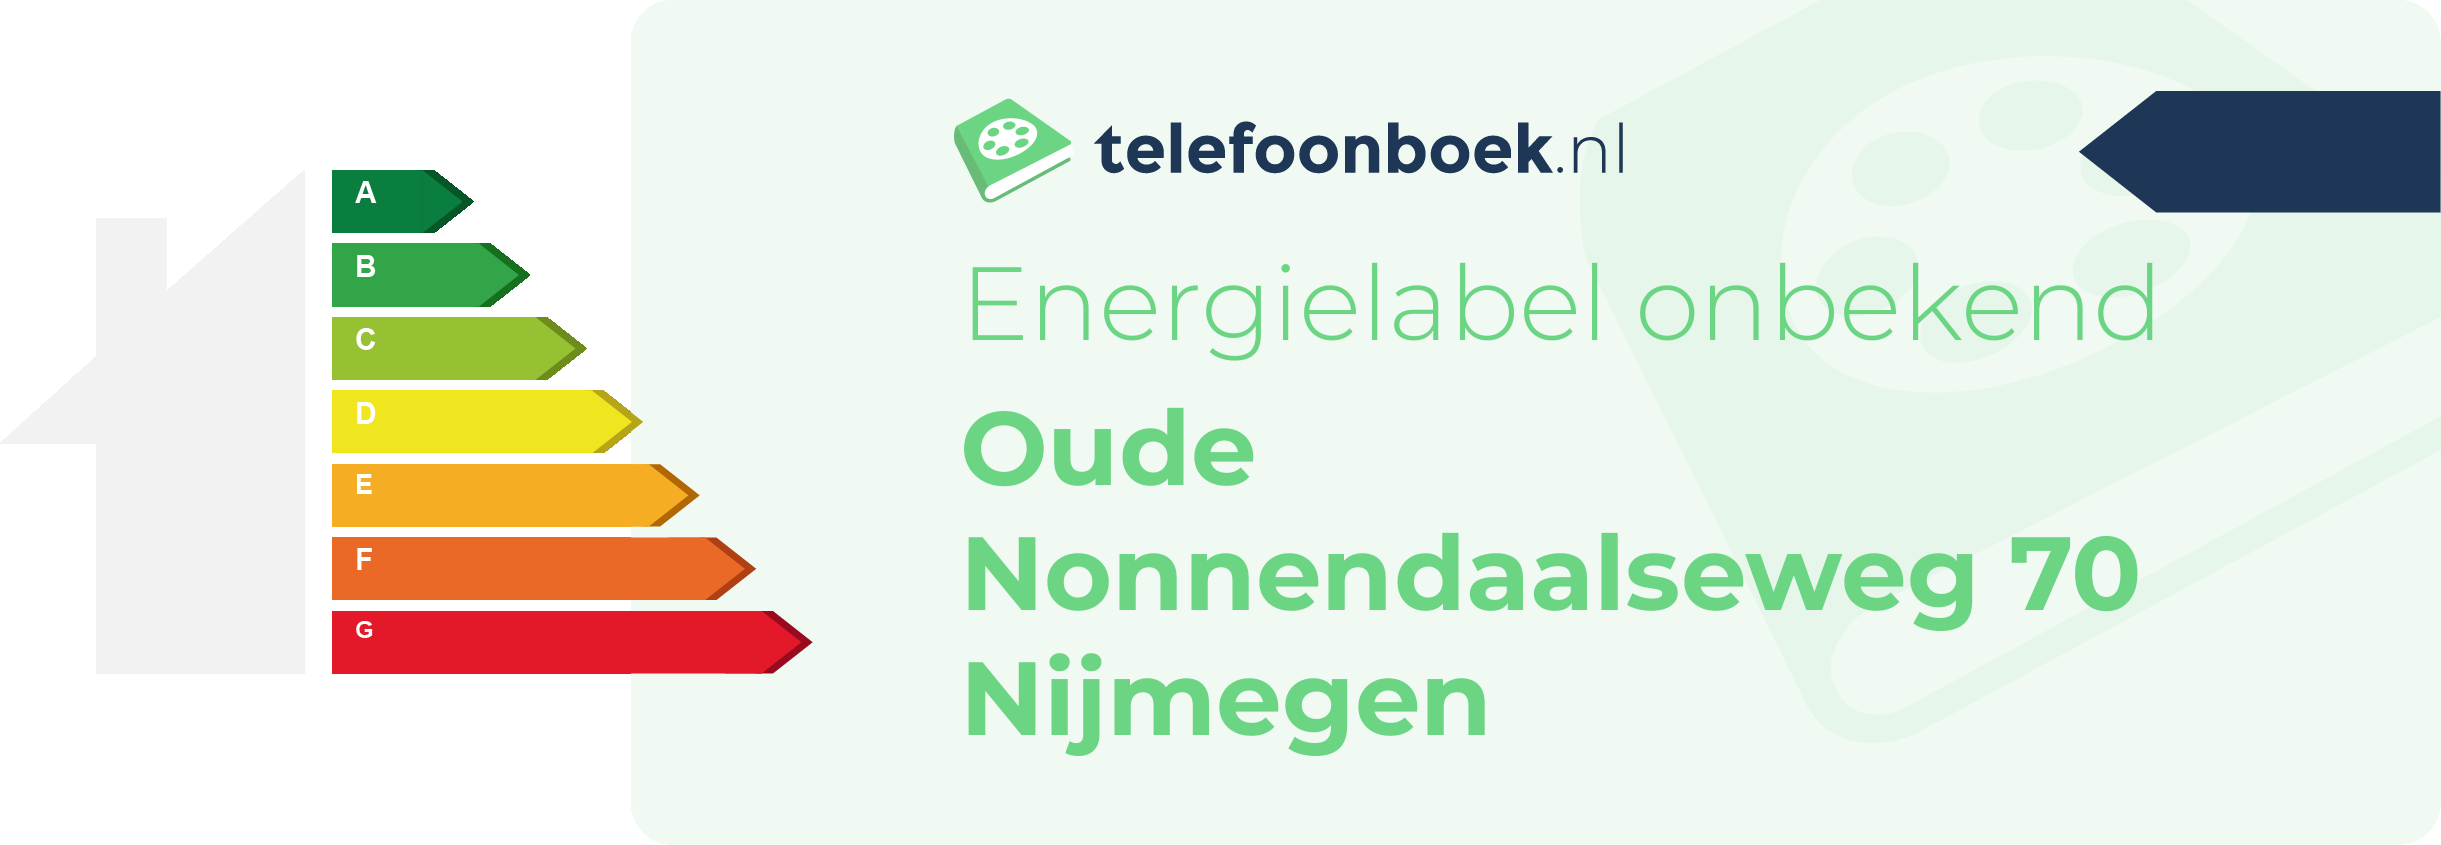 Energielabel Oude Nonnendaalseweg 70 Nijmegen